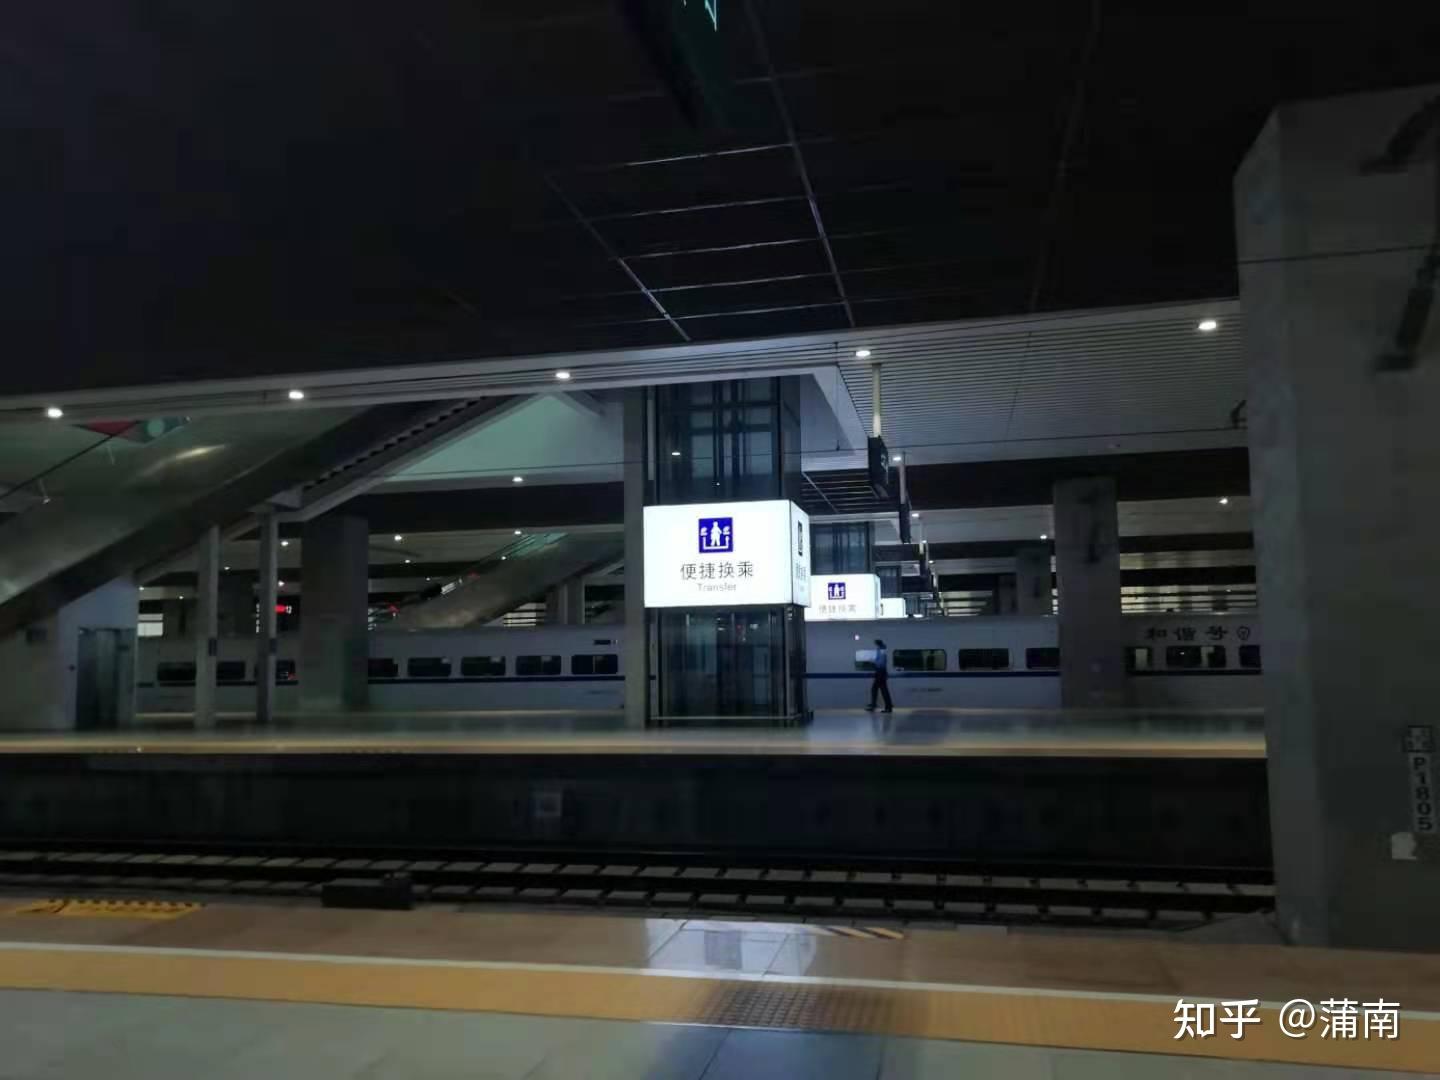 14号线和16号线同台换乘 - 深圳地铁 地铁e族